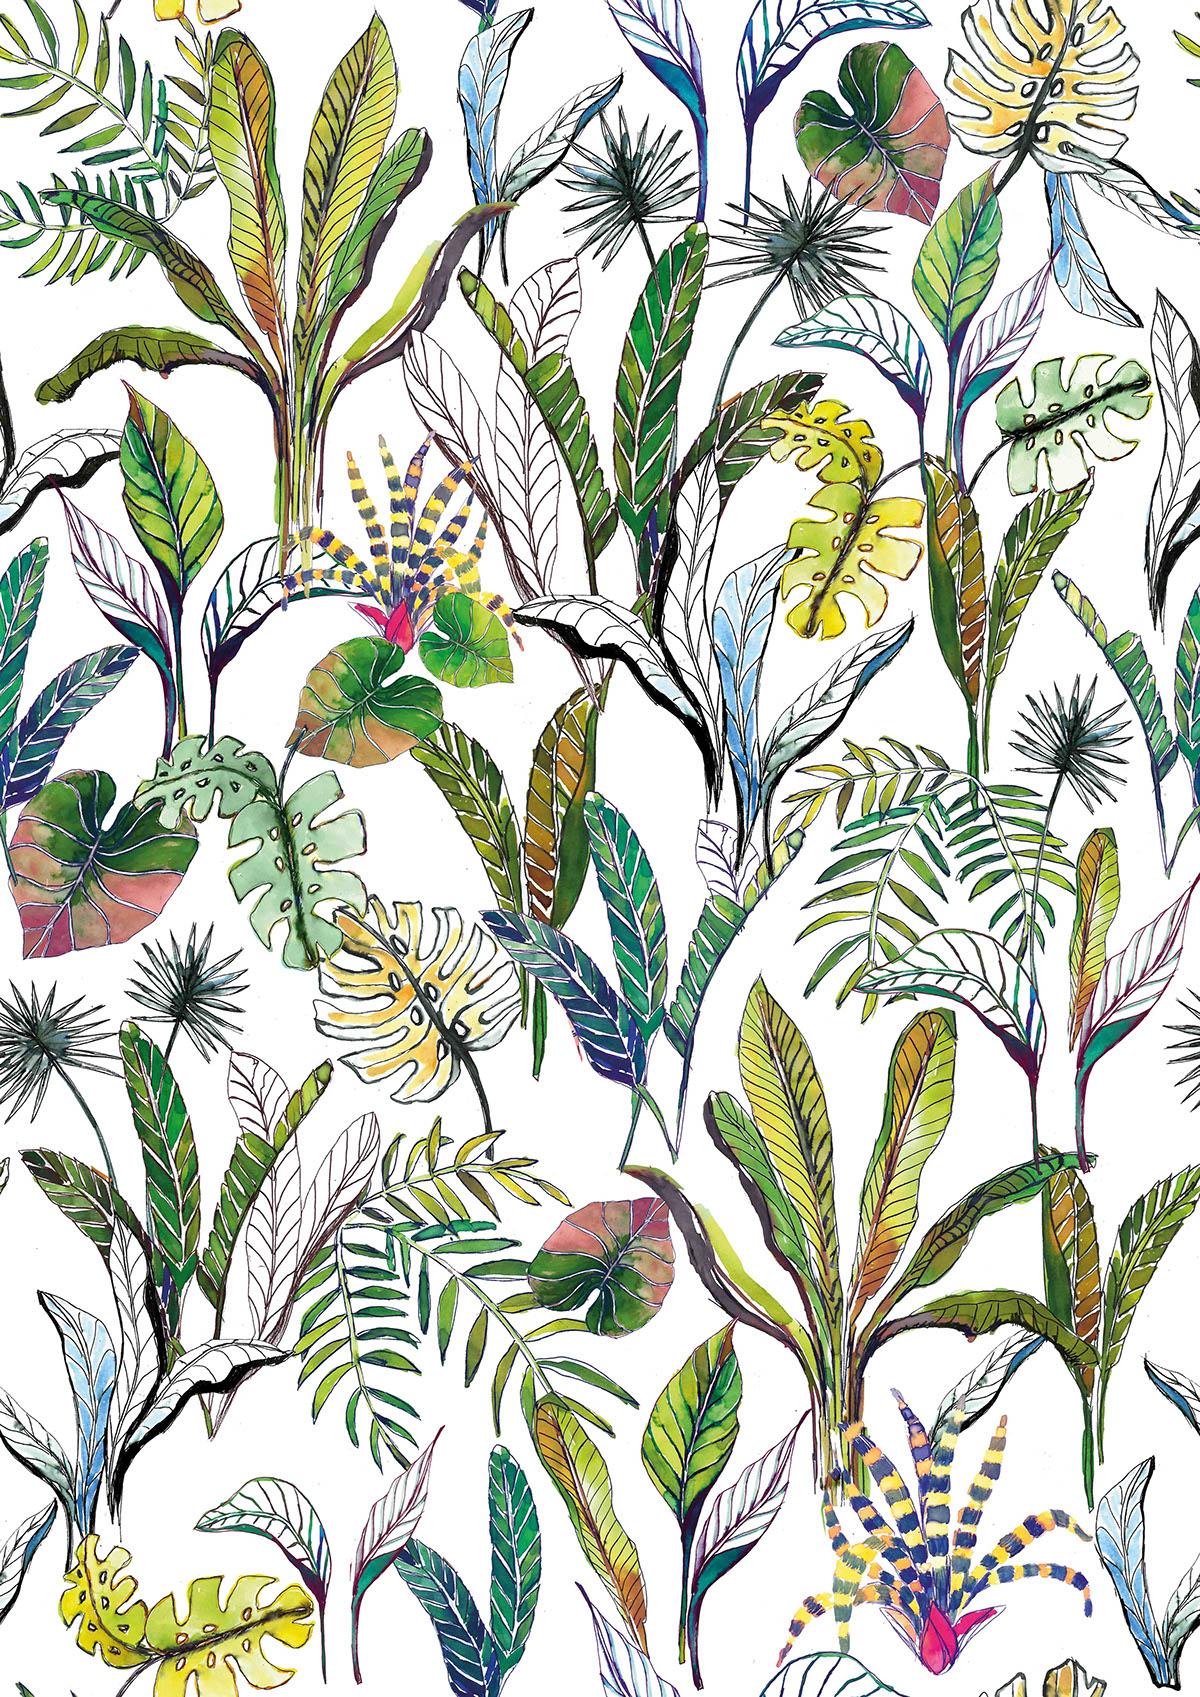 Tropical rainforest wallpaper design for FALRA MAGYAR!